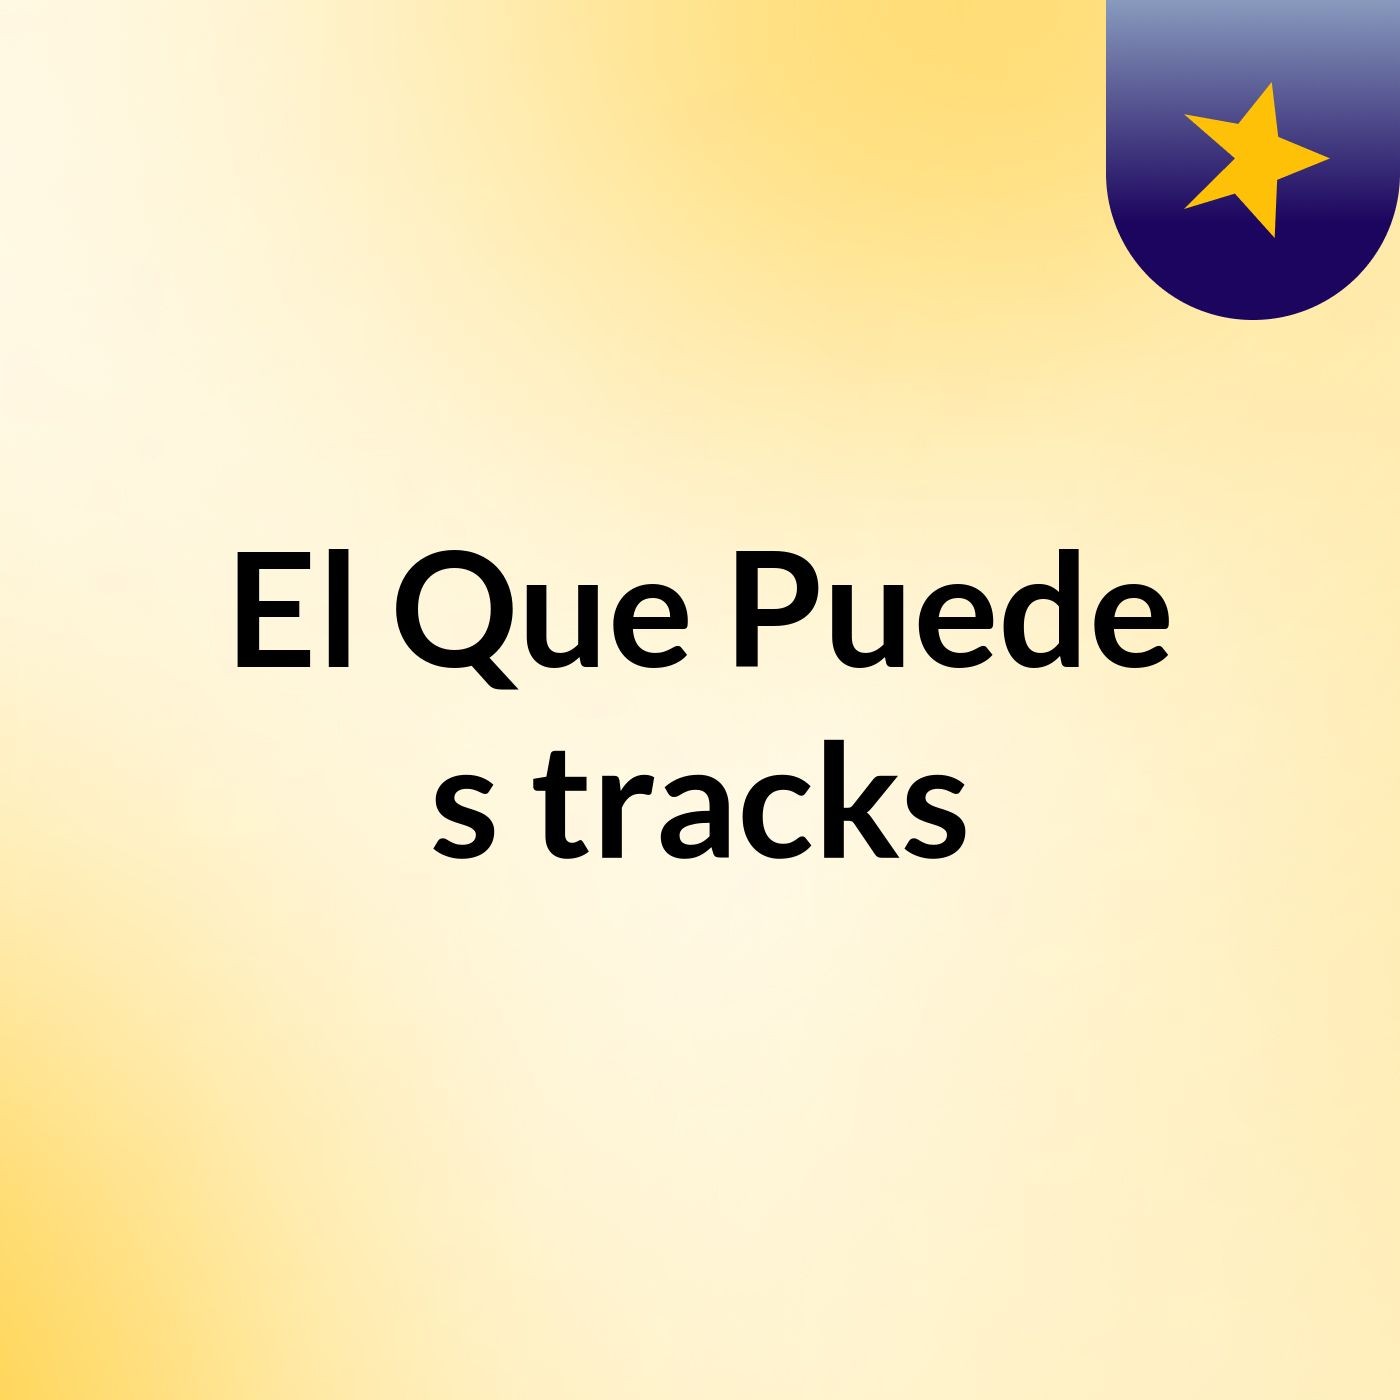 El Que Puede's tracks